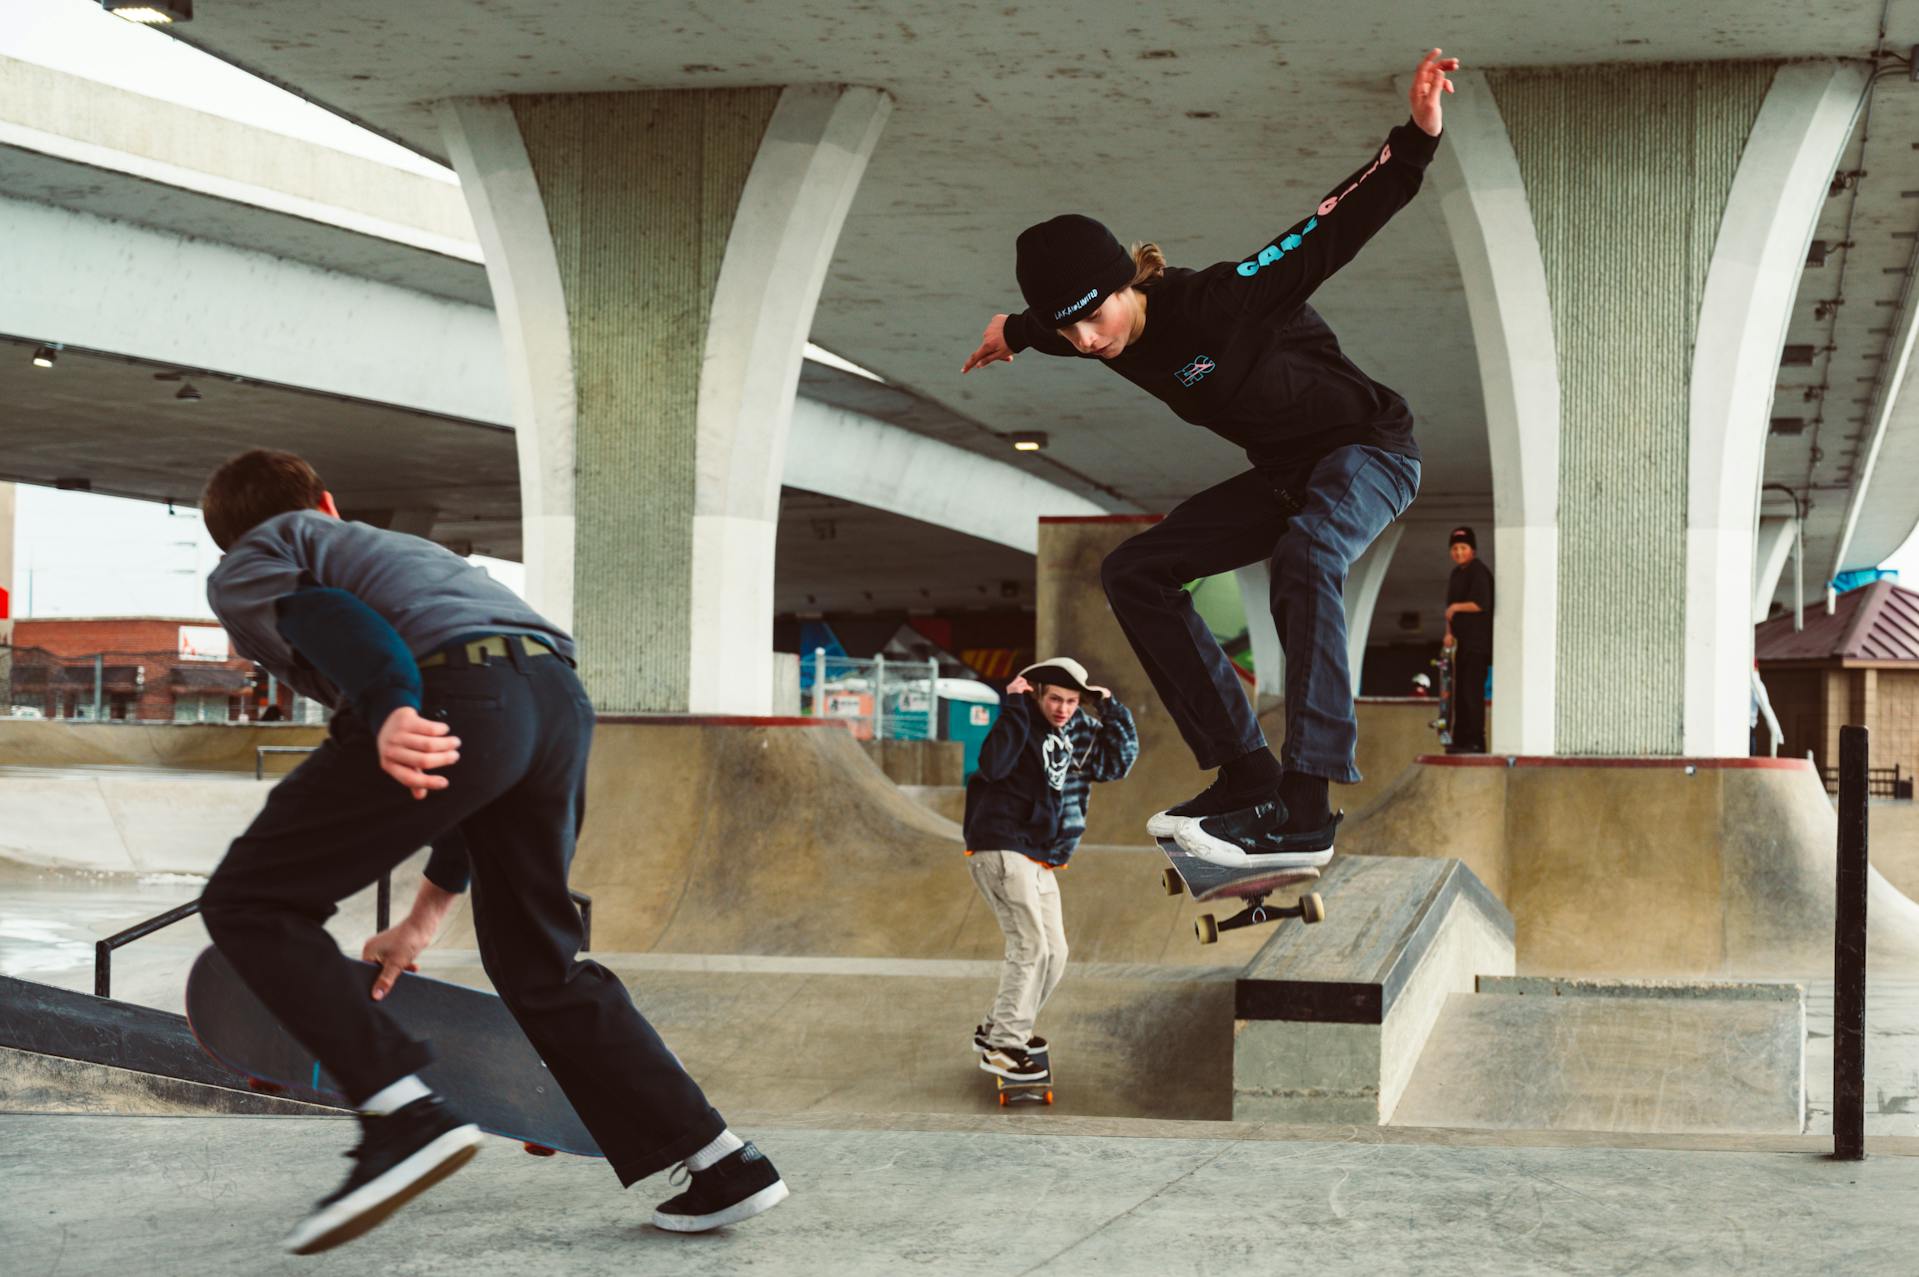 Three men skateboarding